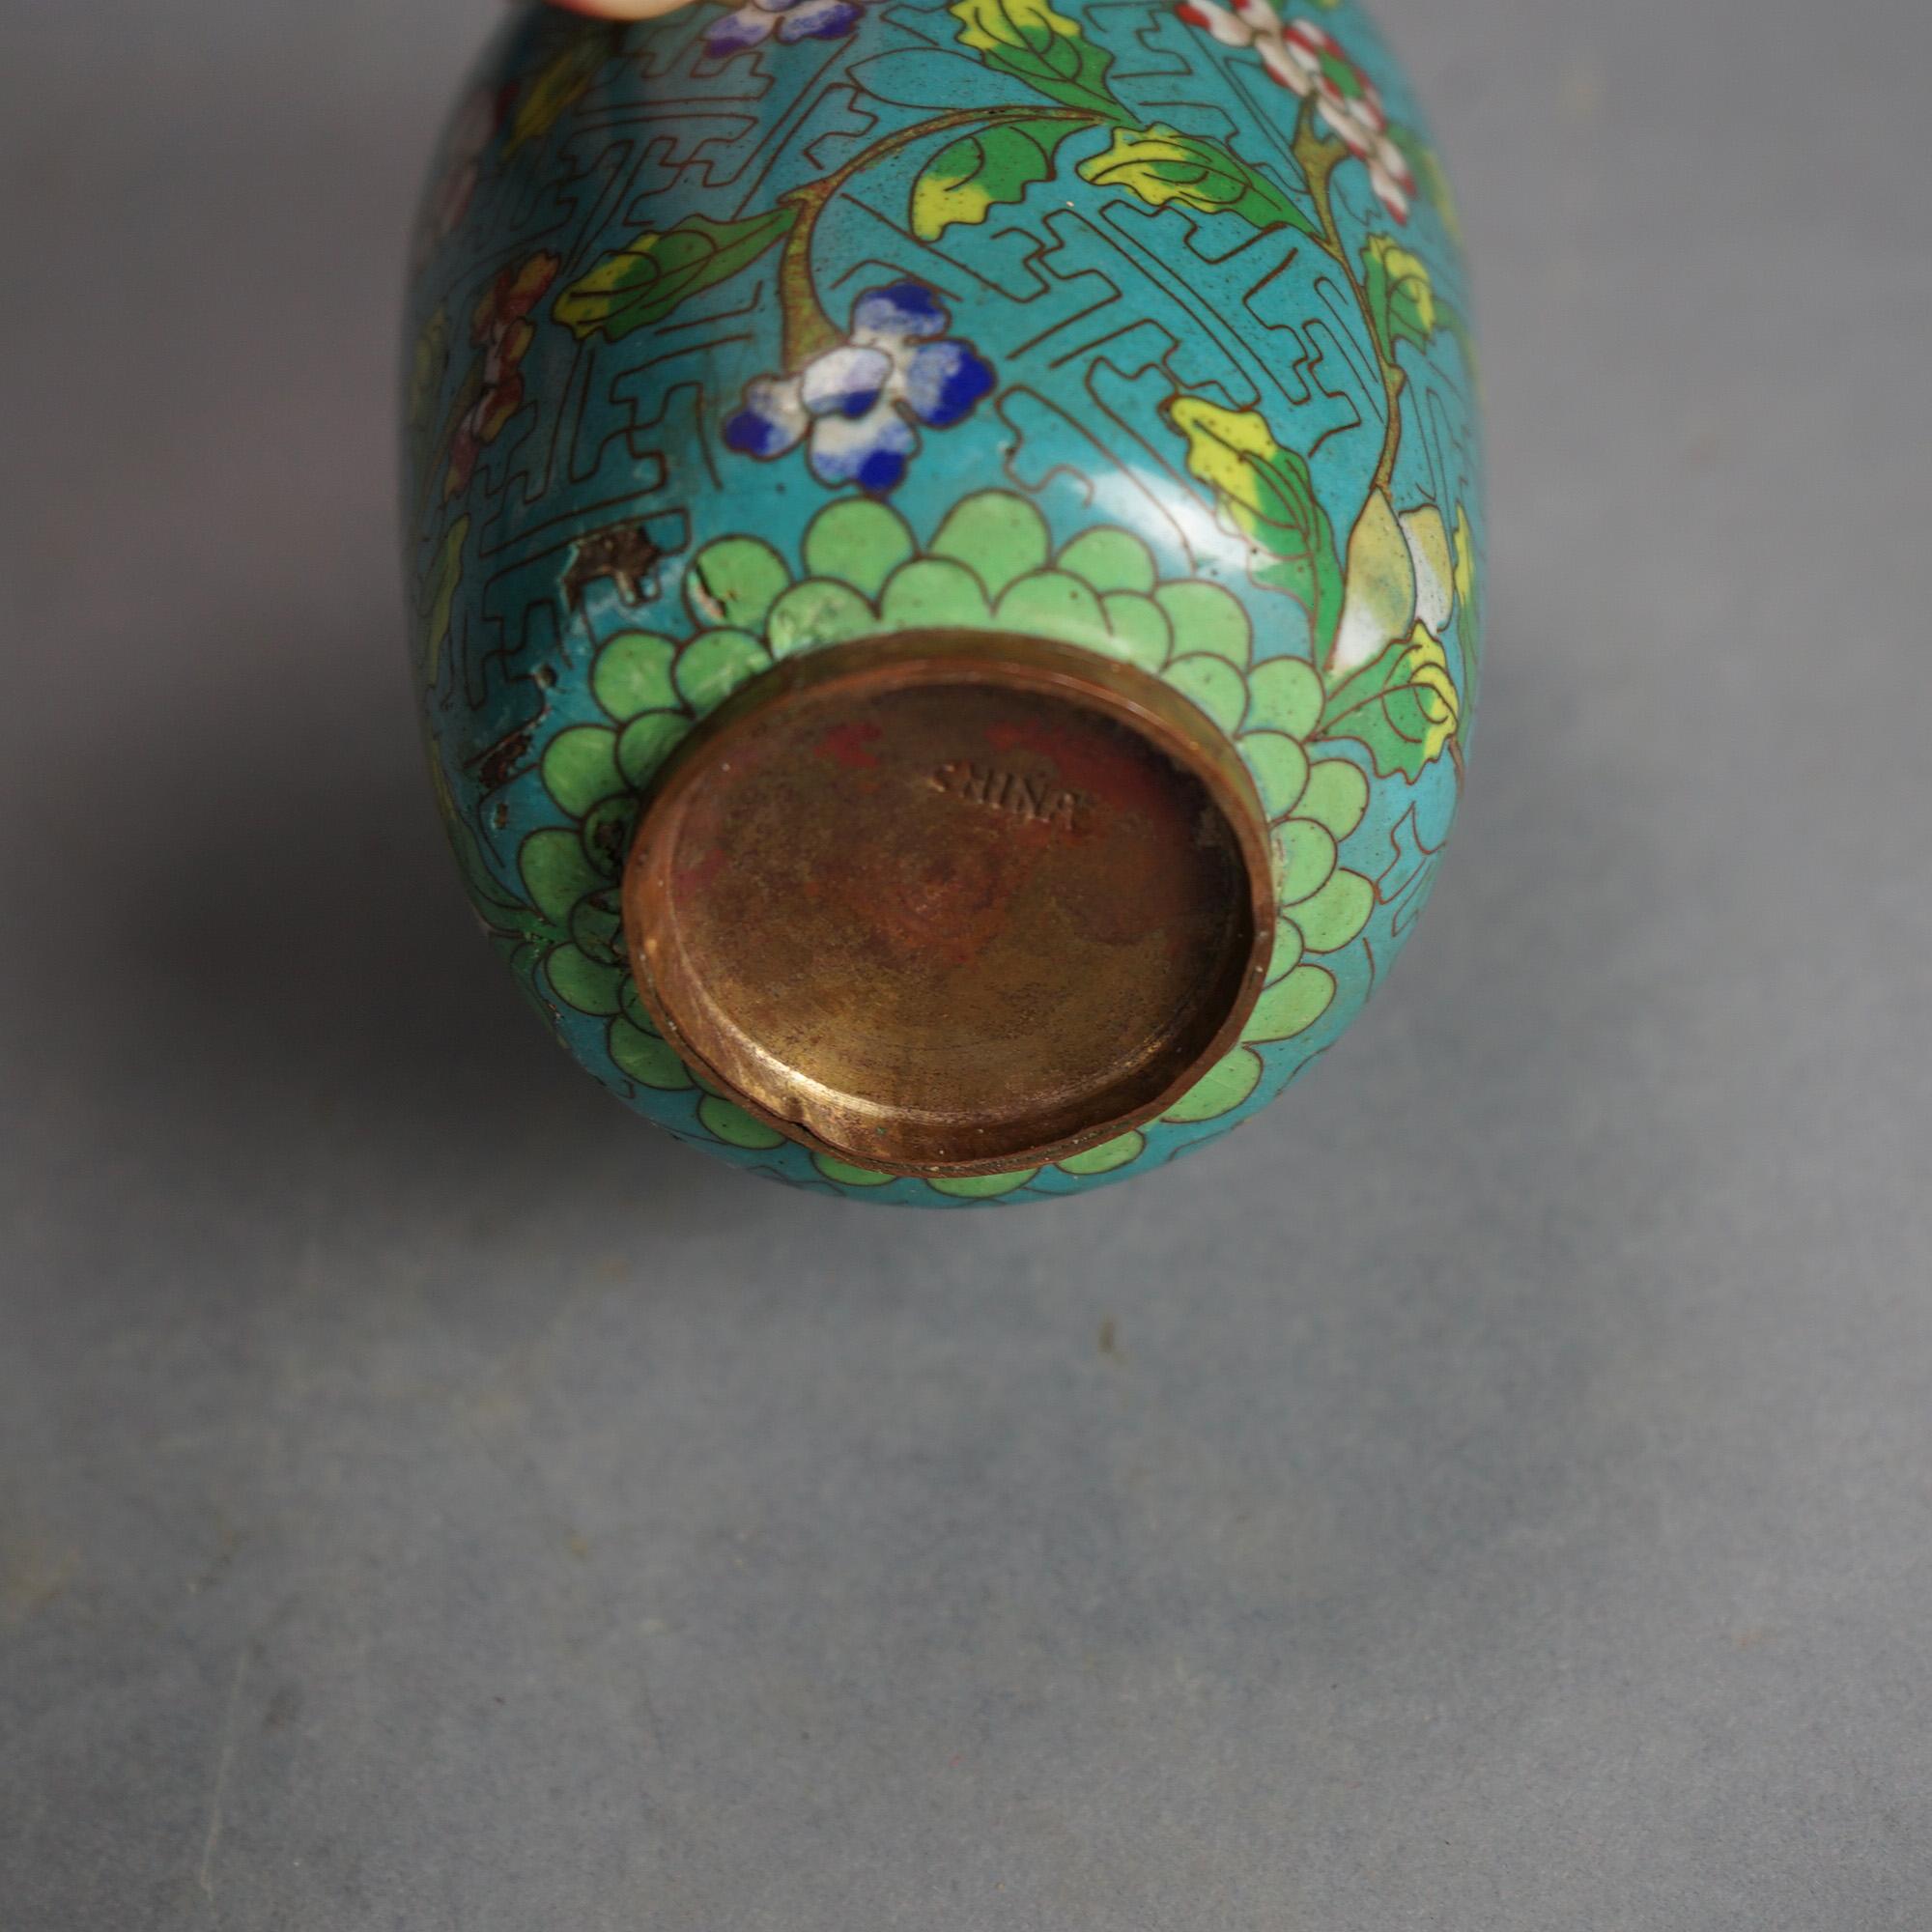 Antike chinesische Cloisonné-Vasen, emailliert, um 1920

Maße - Sm bis Lg: 5,25 